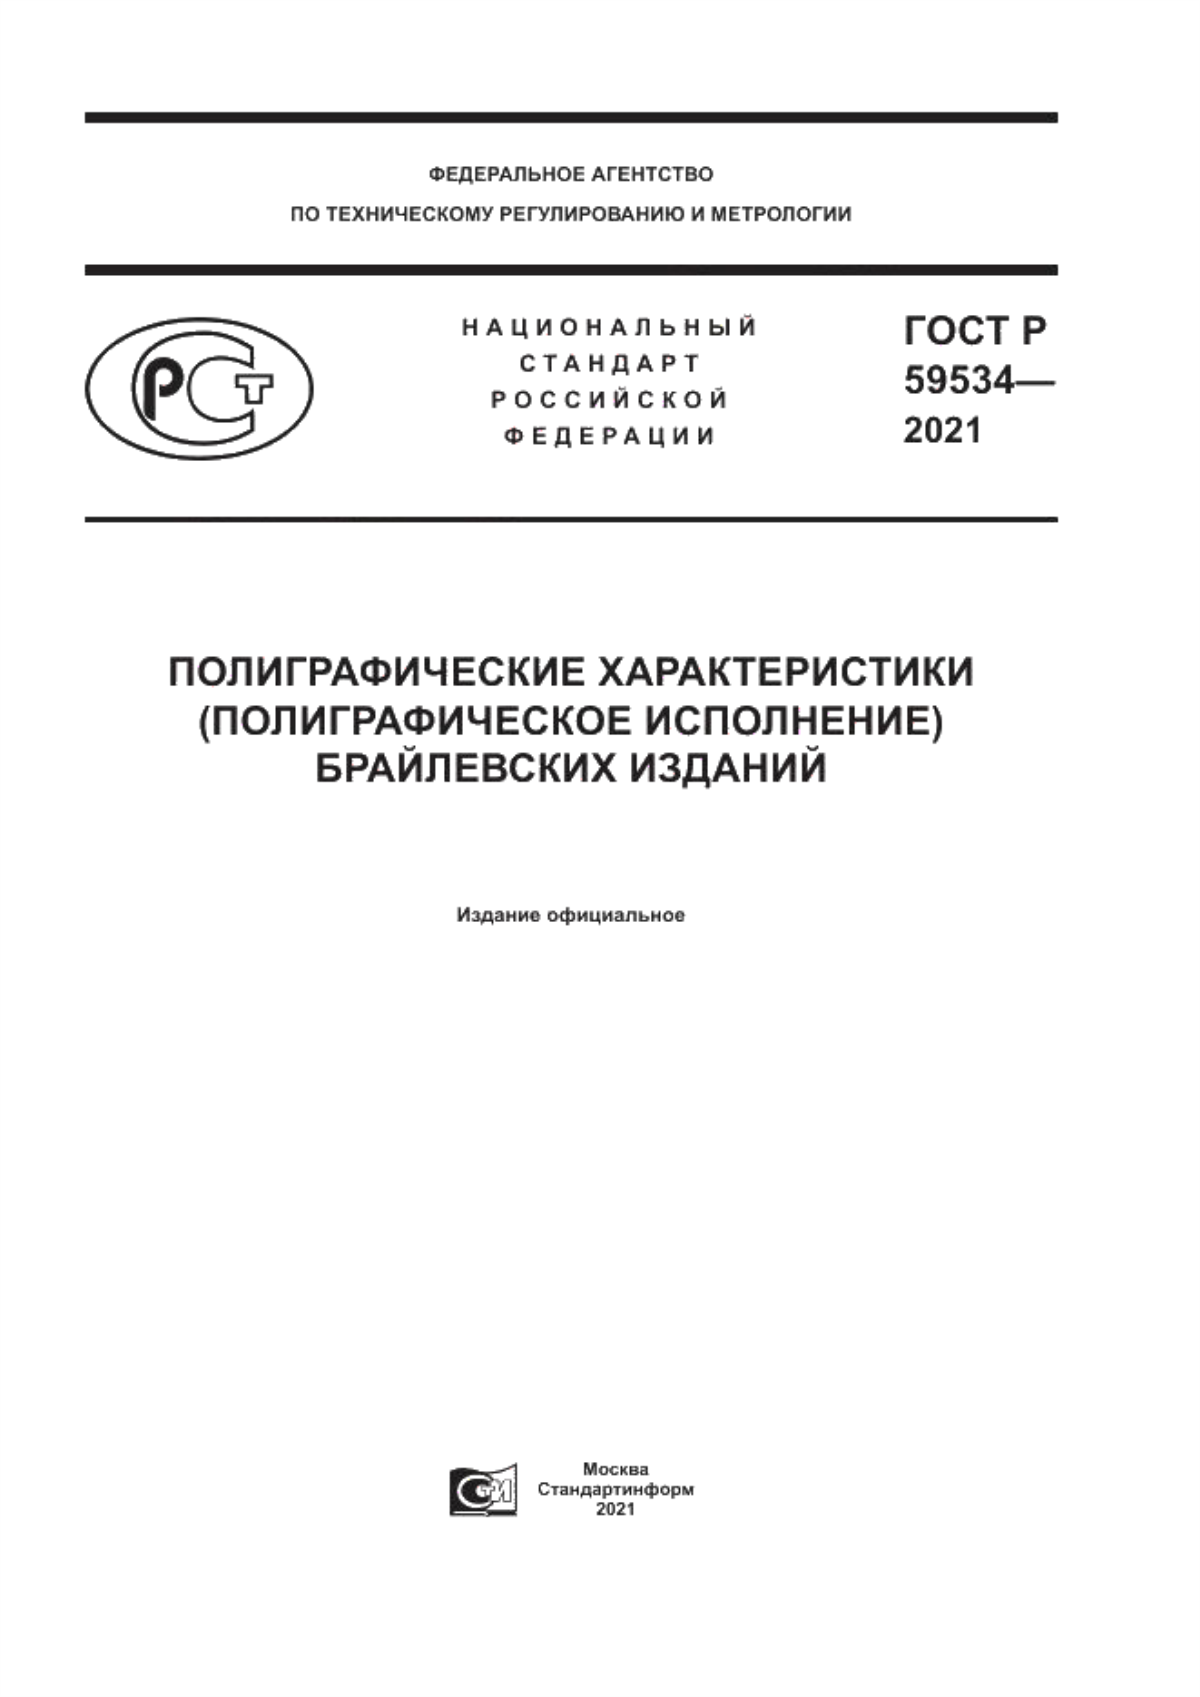 ГОСТ Р 59534-2021 Полиграфические характеристики (полиграфическое исполнение) брайлевских изданий